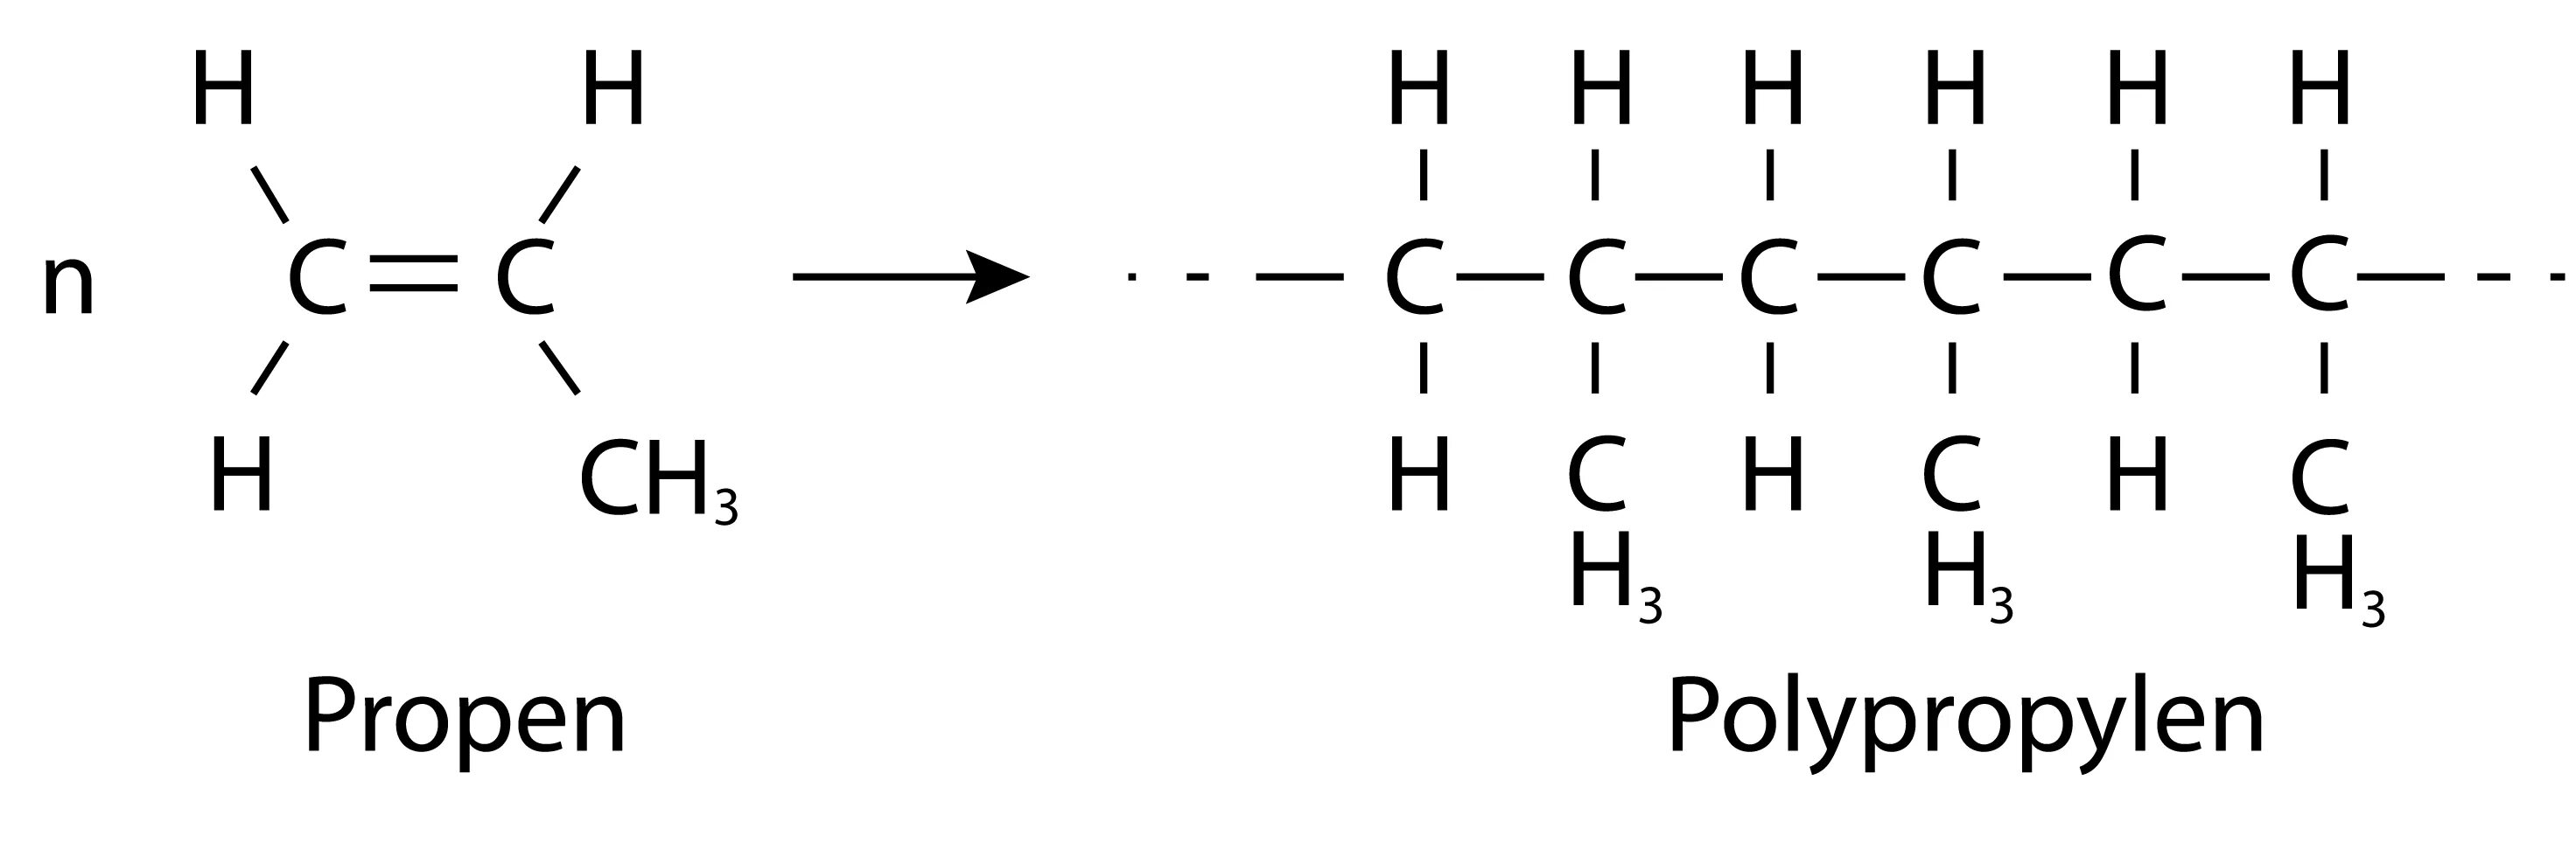 Полиэтилен формула полимера. Полимеры структурная формула. Строение полиэтилена в химии. Полиэтилен структурная формула. Уравнение полиэтилена